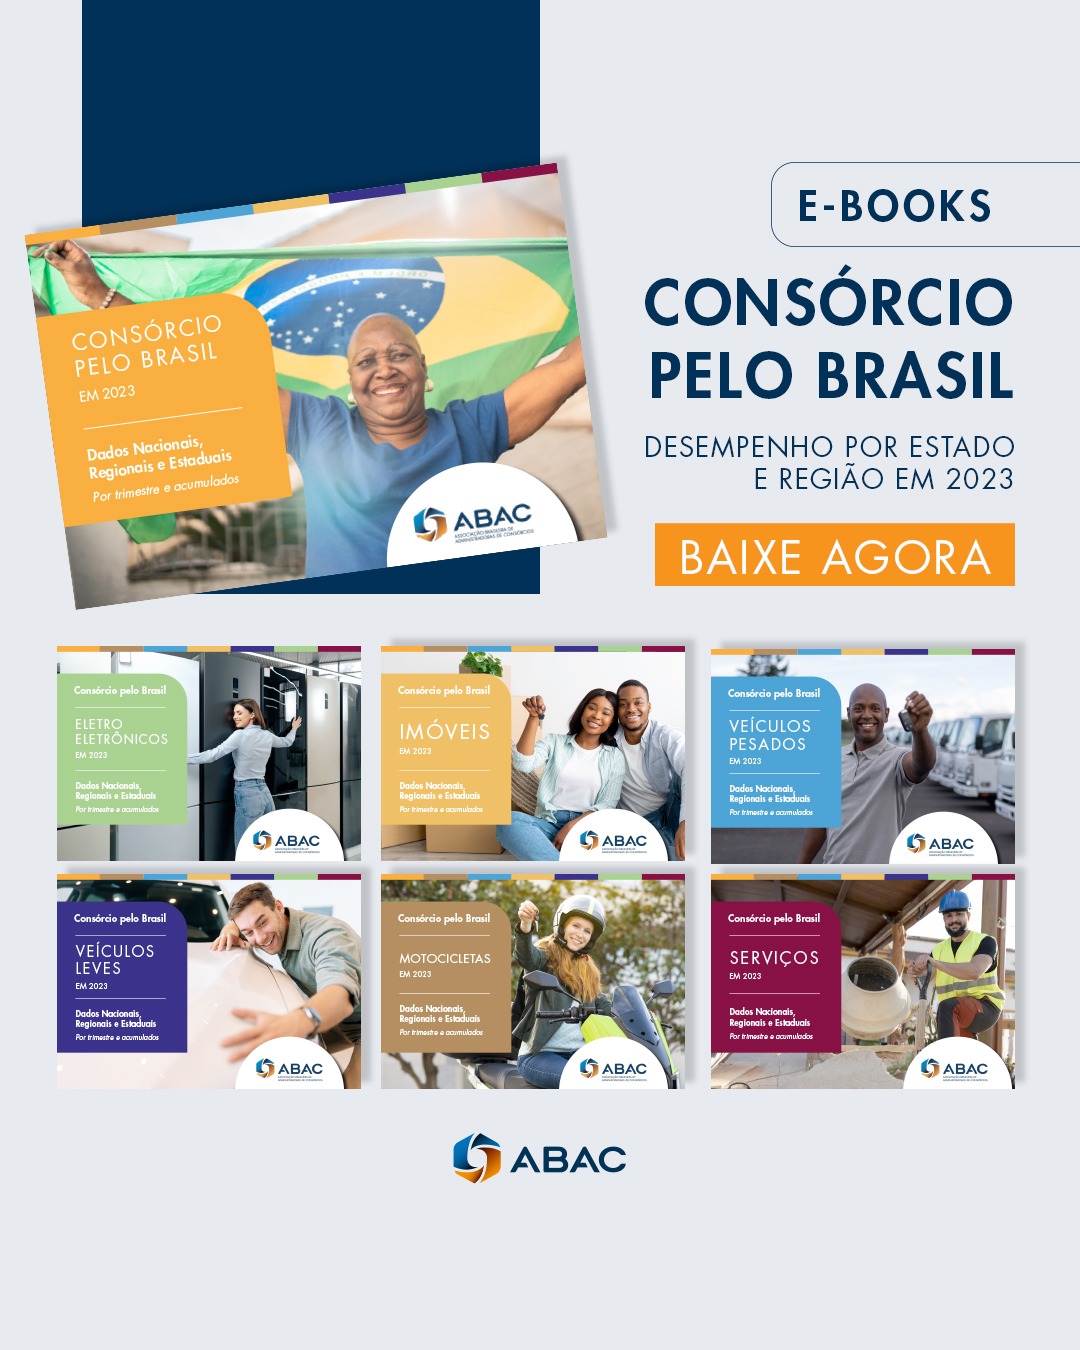 [NOVOS E-BOOKS] Consórcio pelo Brasil em 2023